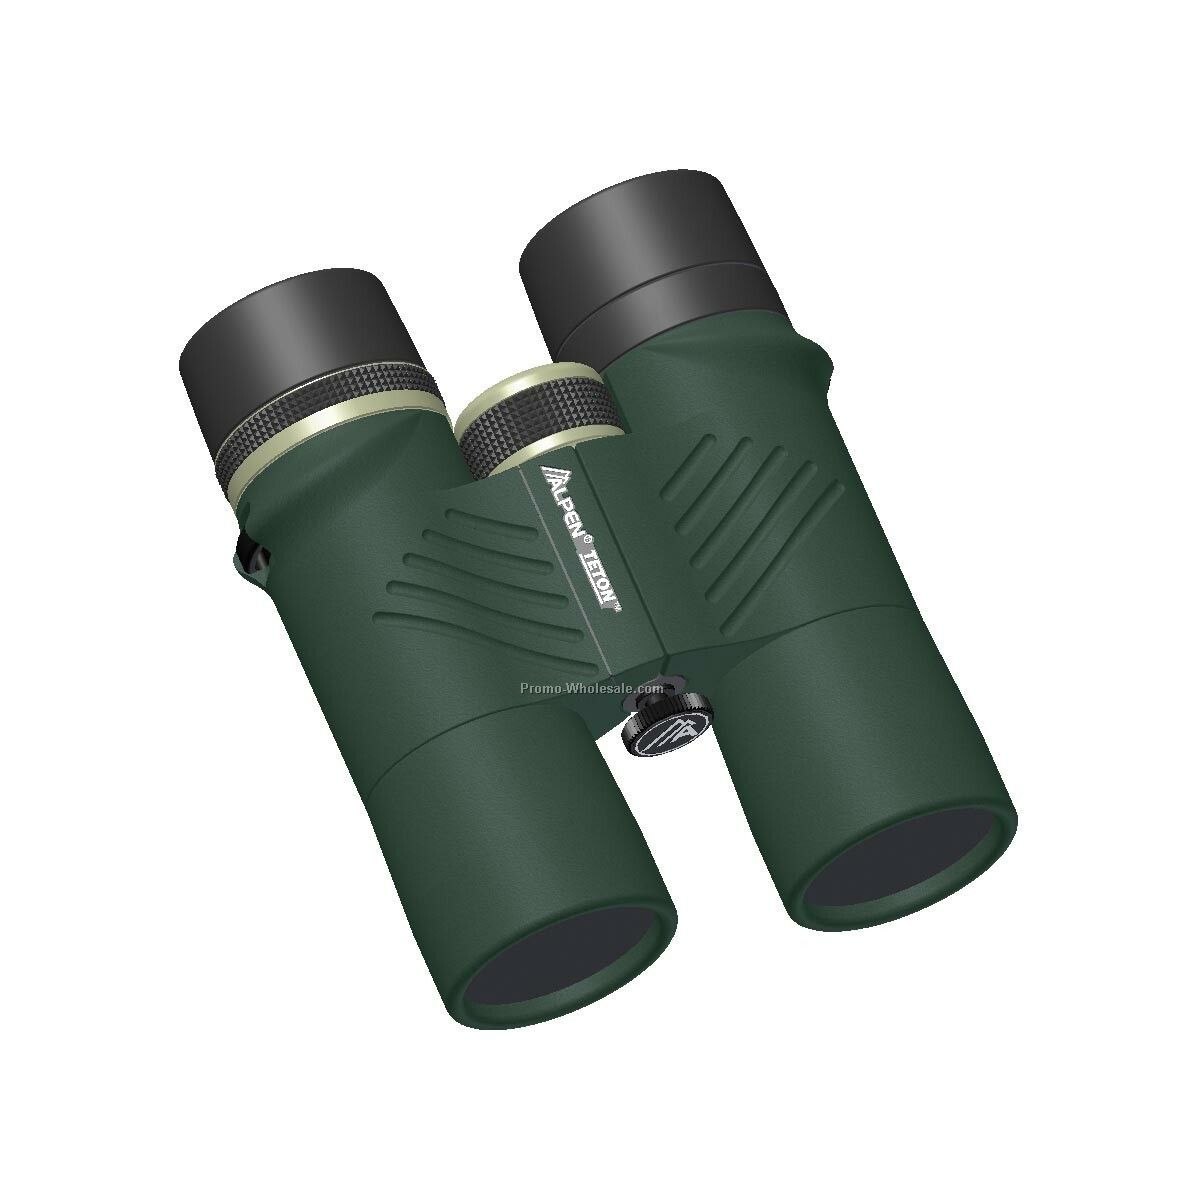 Alpen Teton 10x42 Waterproof Binoculars